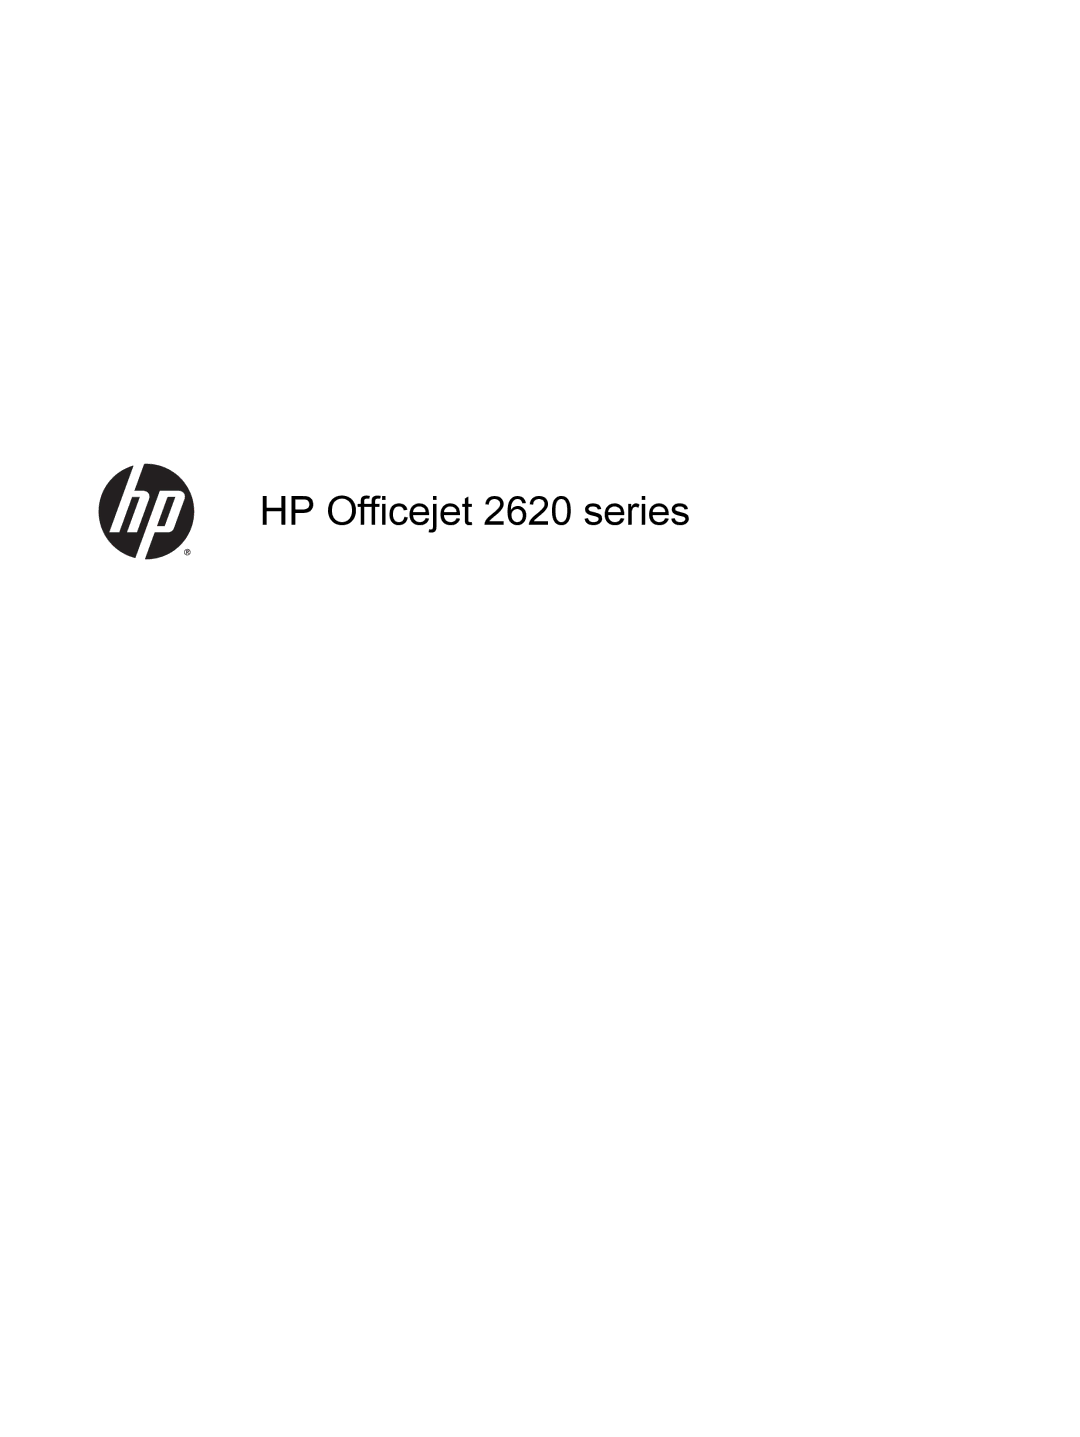 HP 2621, 2622 manual HP Officejet 2620 series 